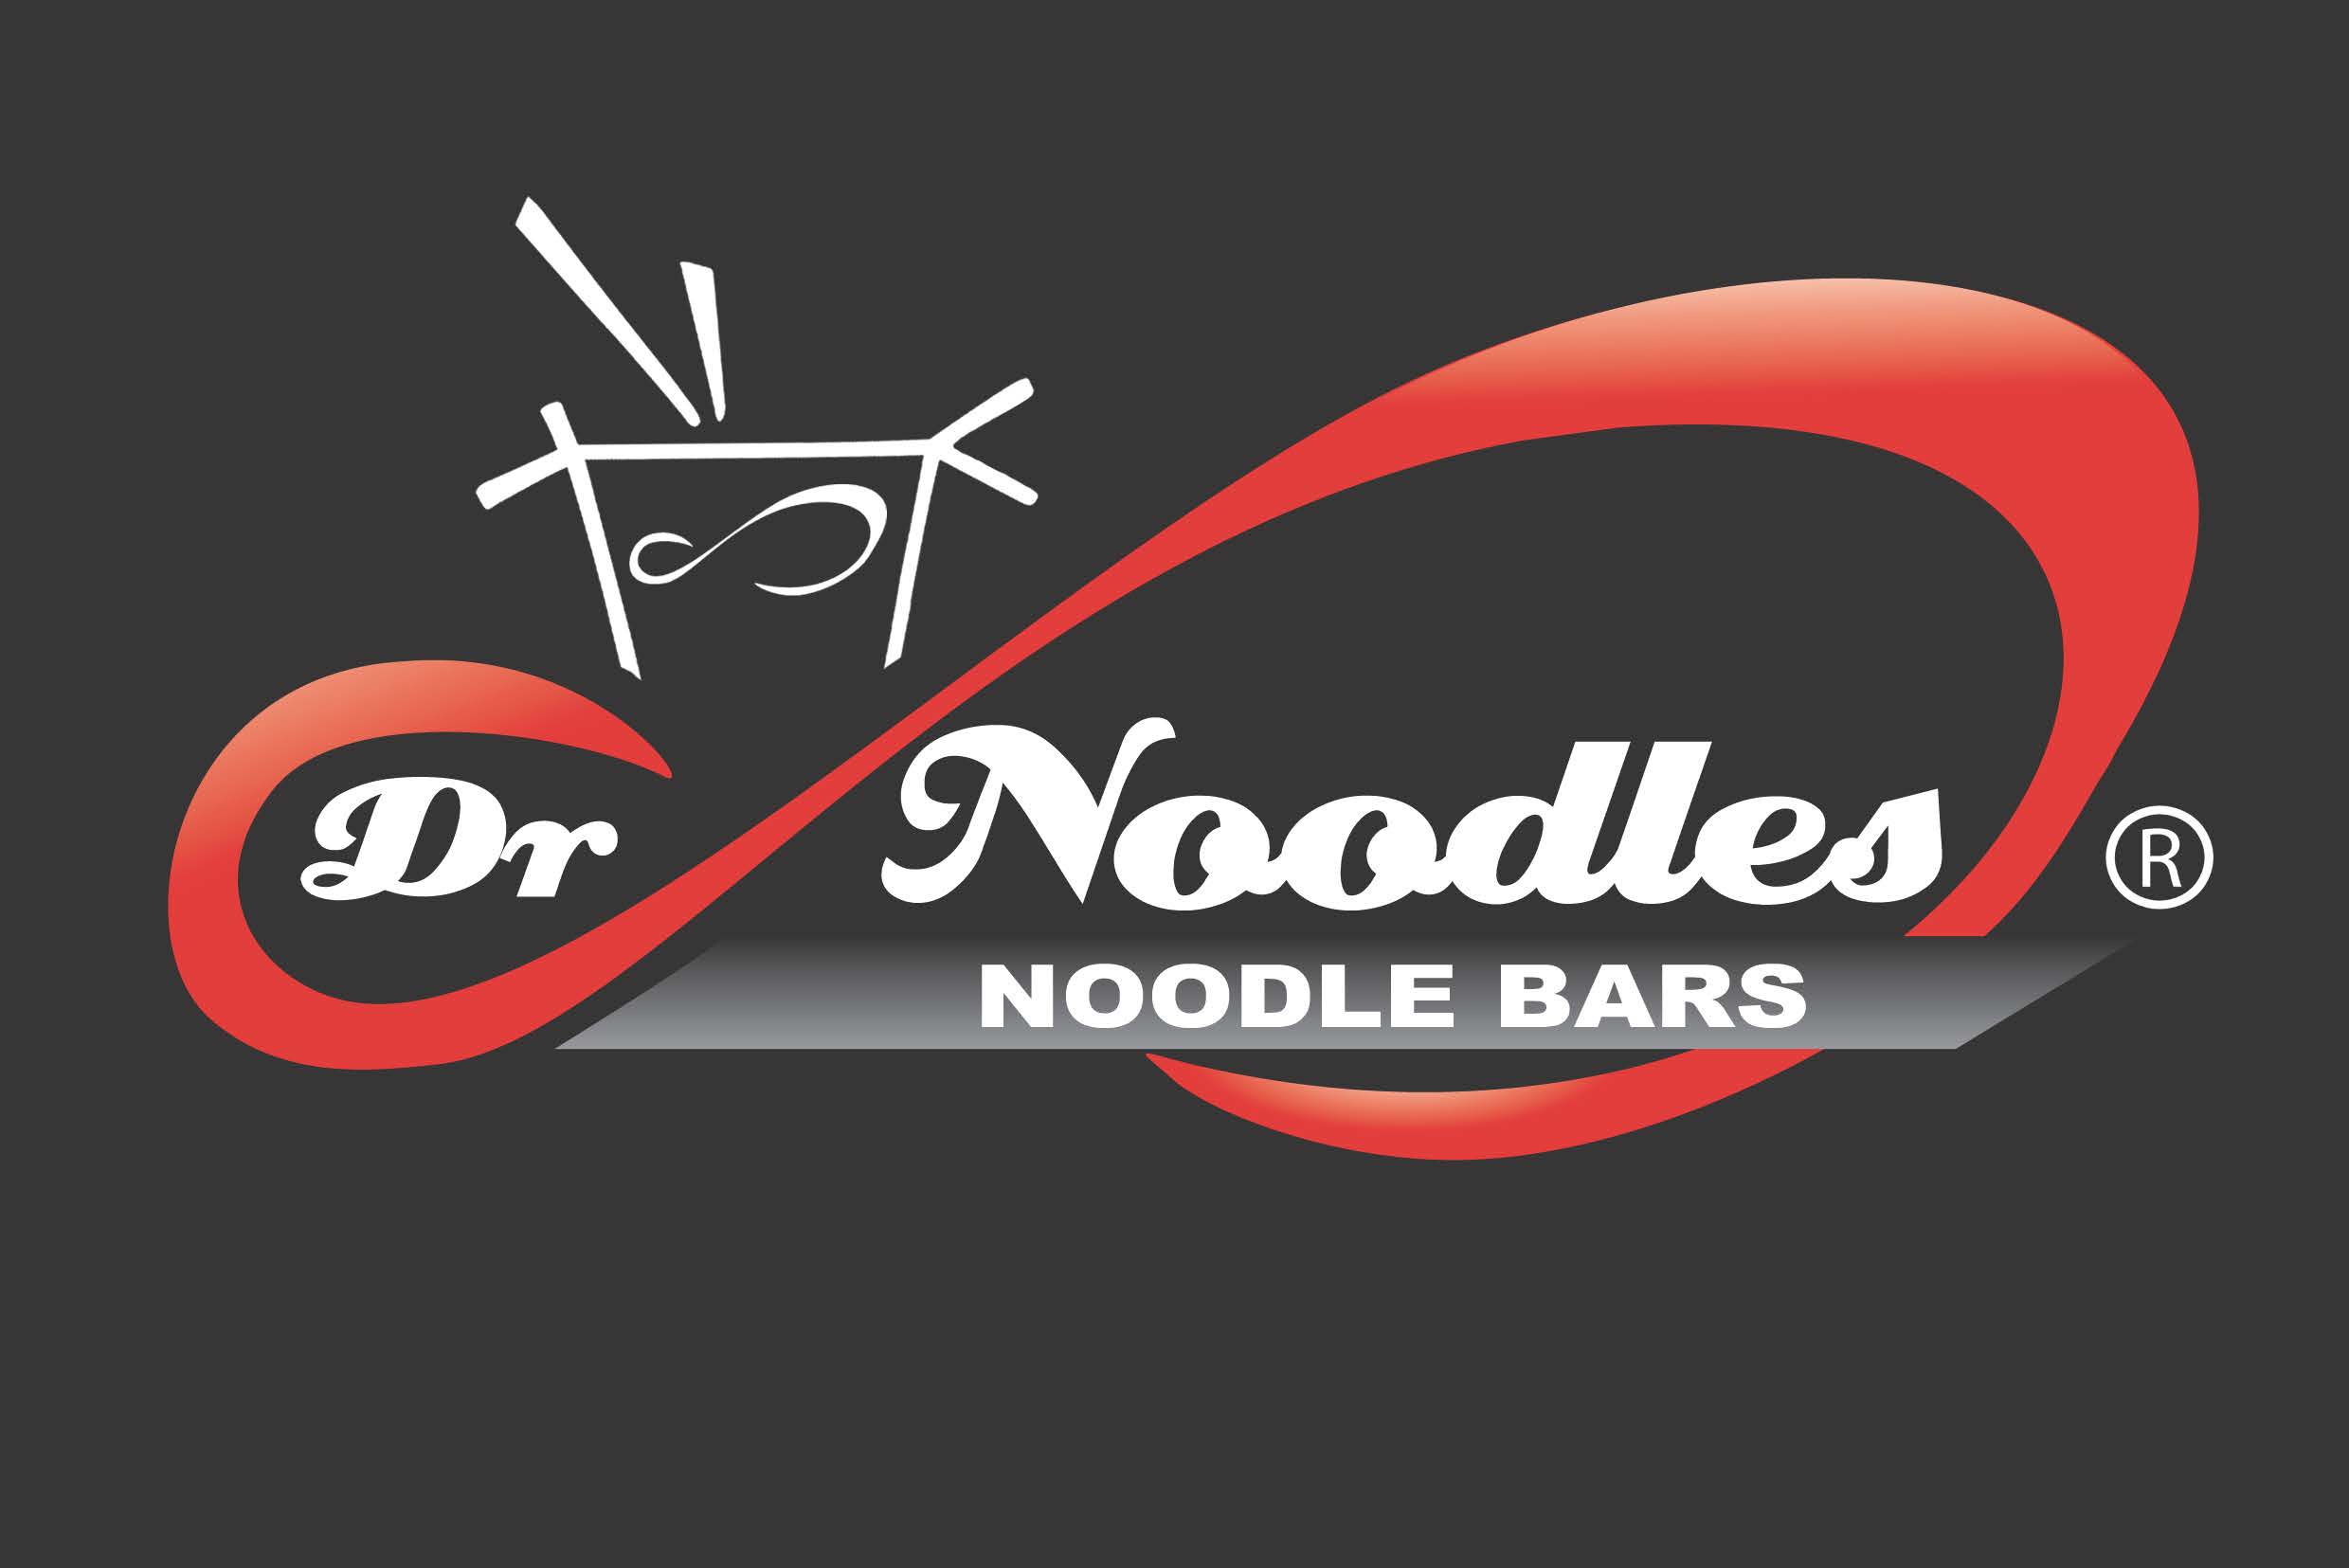 Dr Noodles Noodle Bar